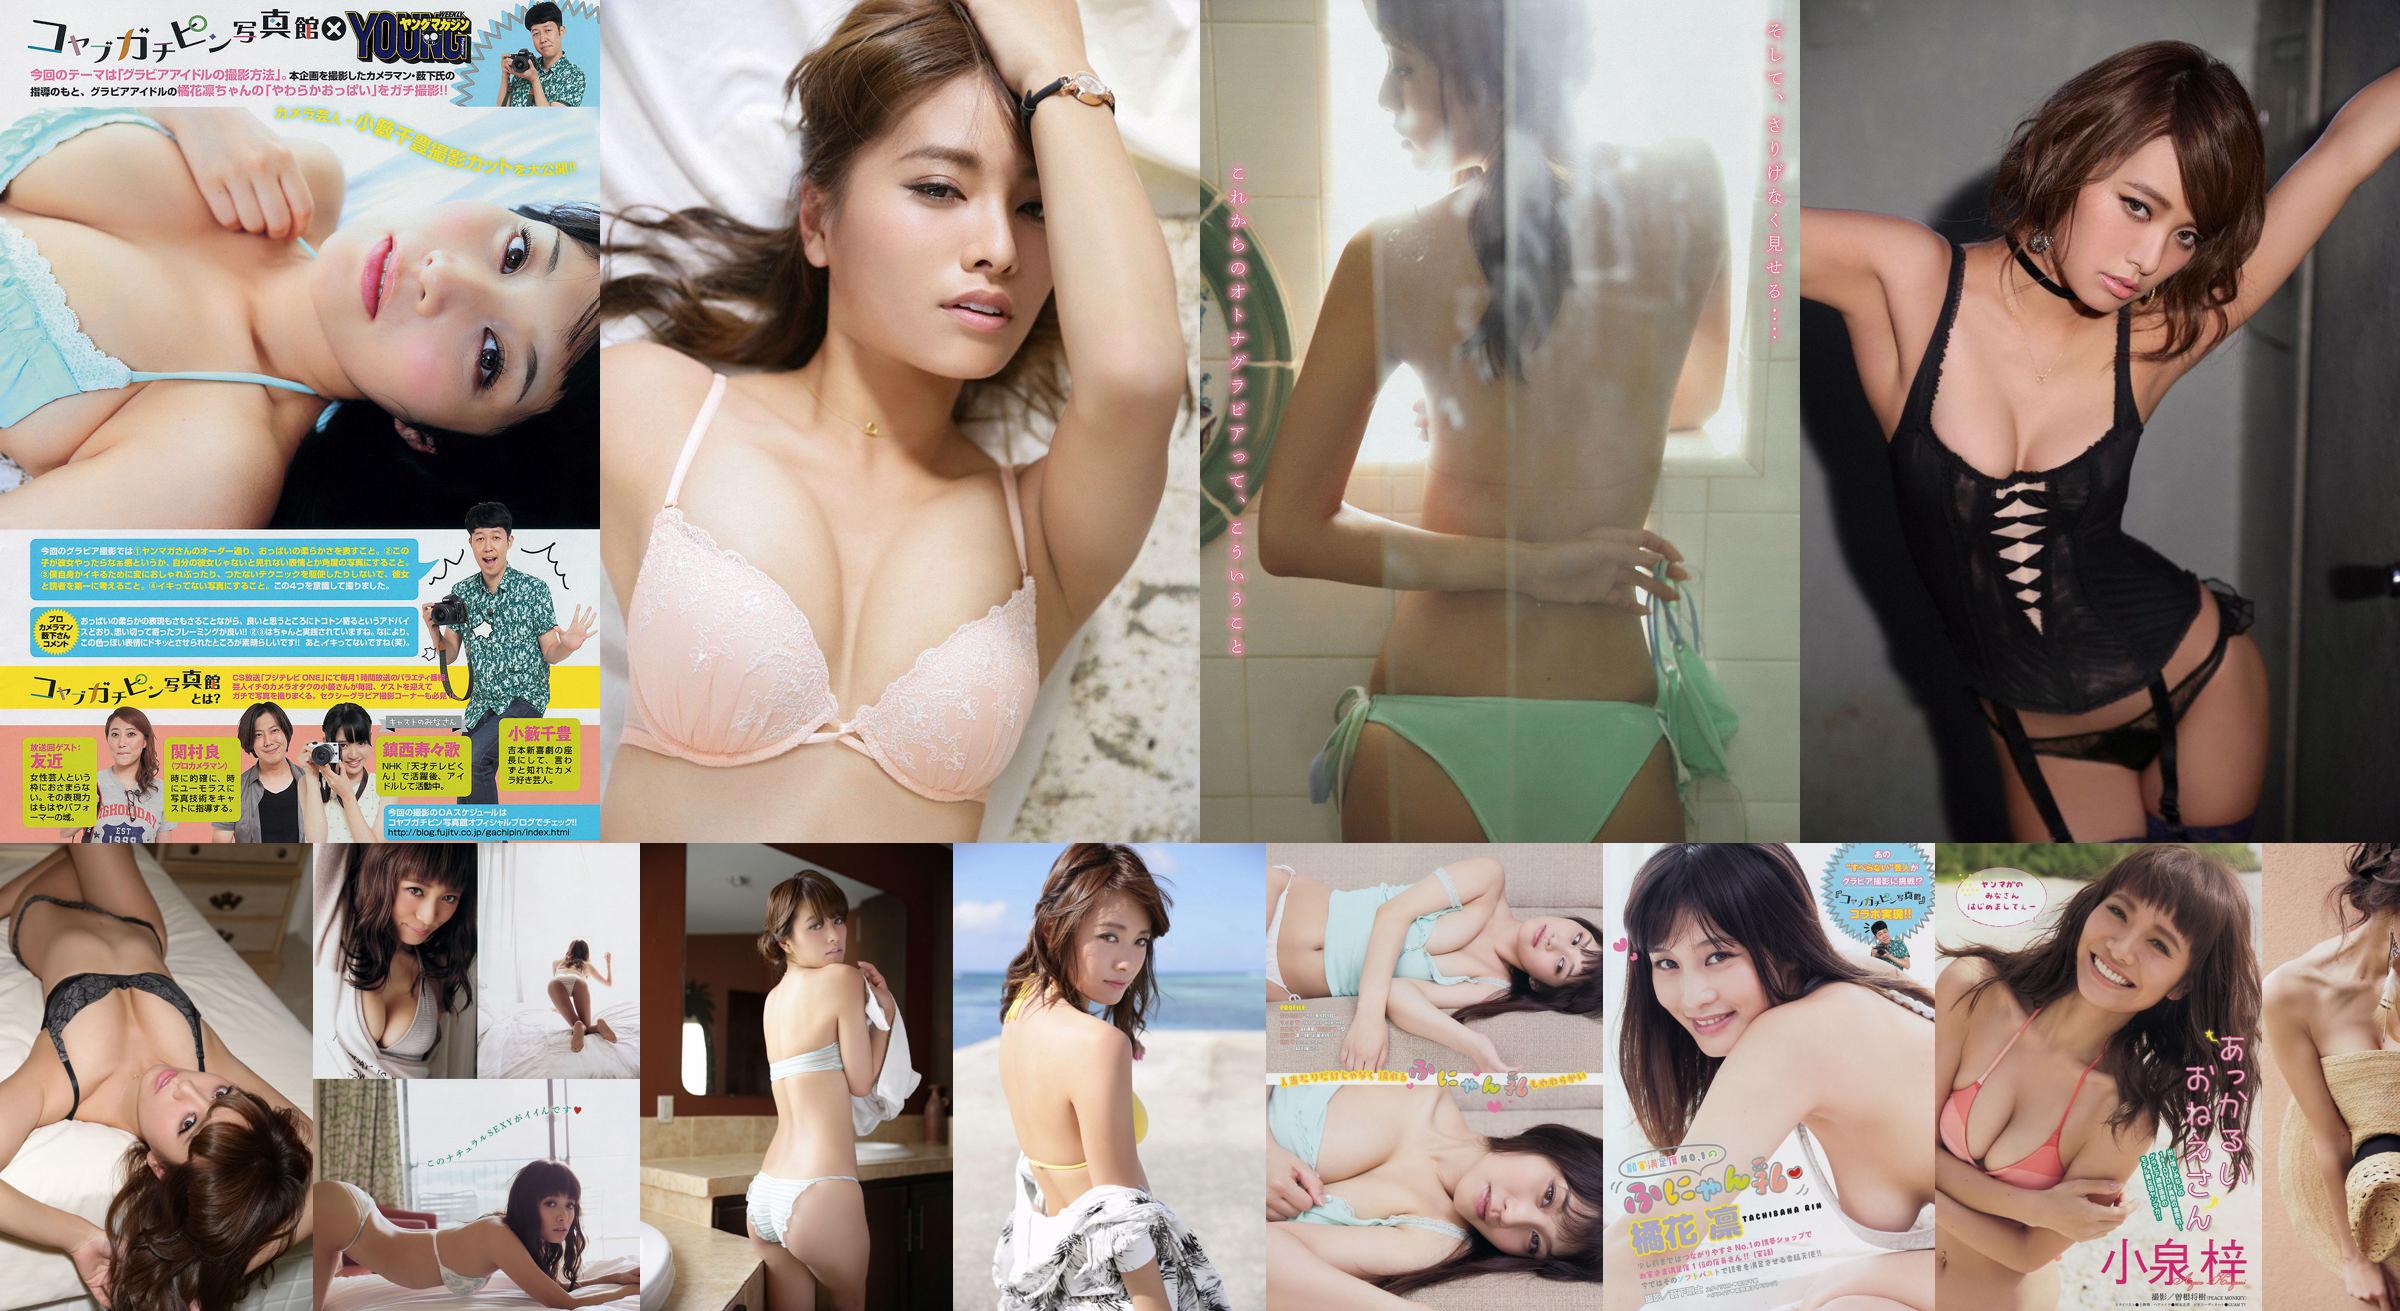 [Young Magazine] Azusa Koizumi Tachibana Rin 2014 No.43 Photo Magazine No.fc4bf1 Page 3